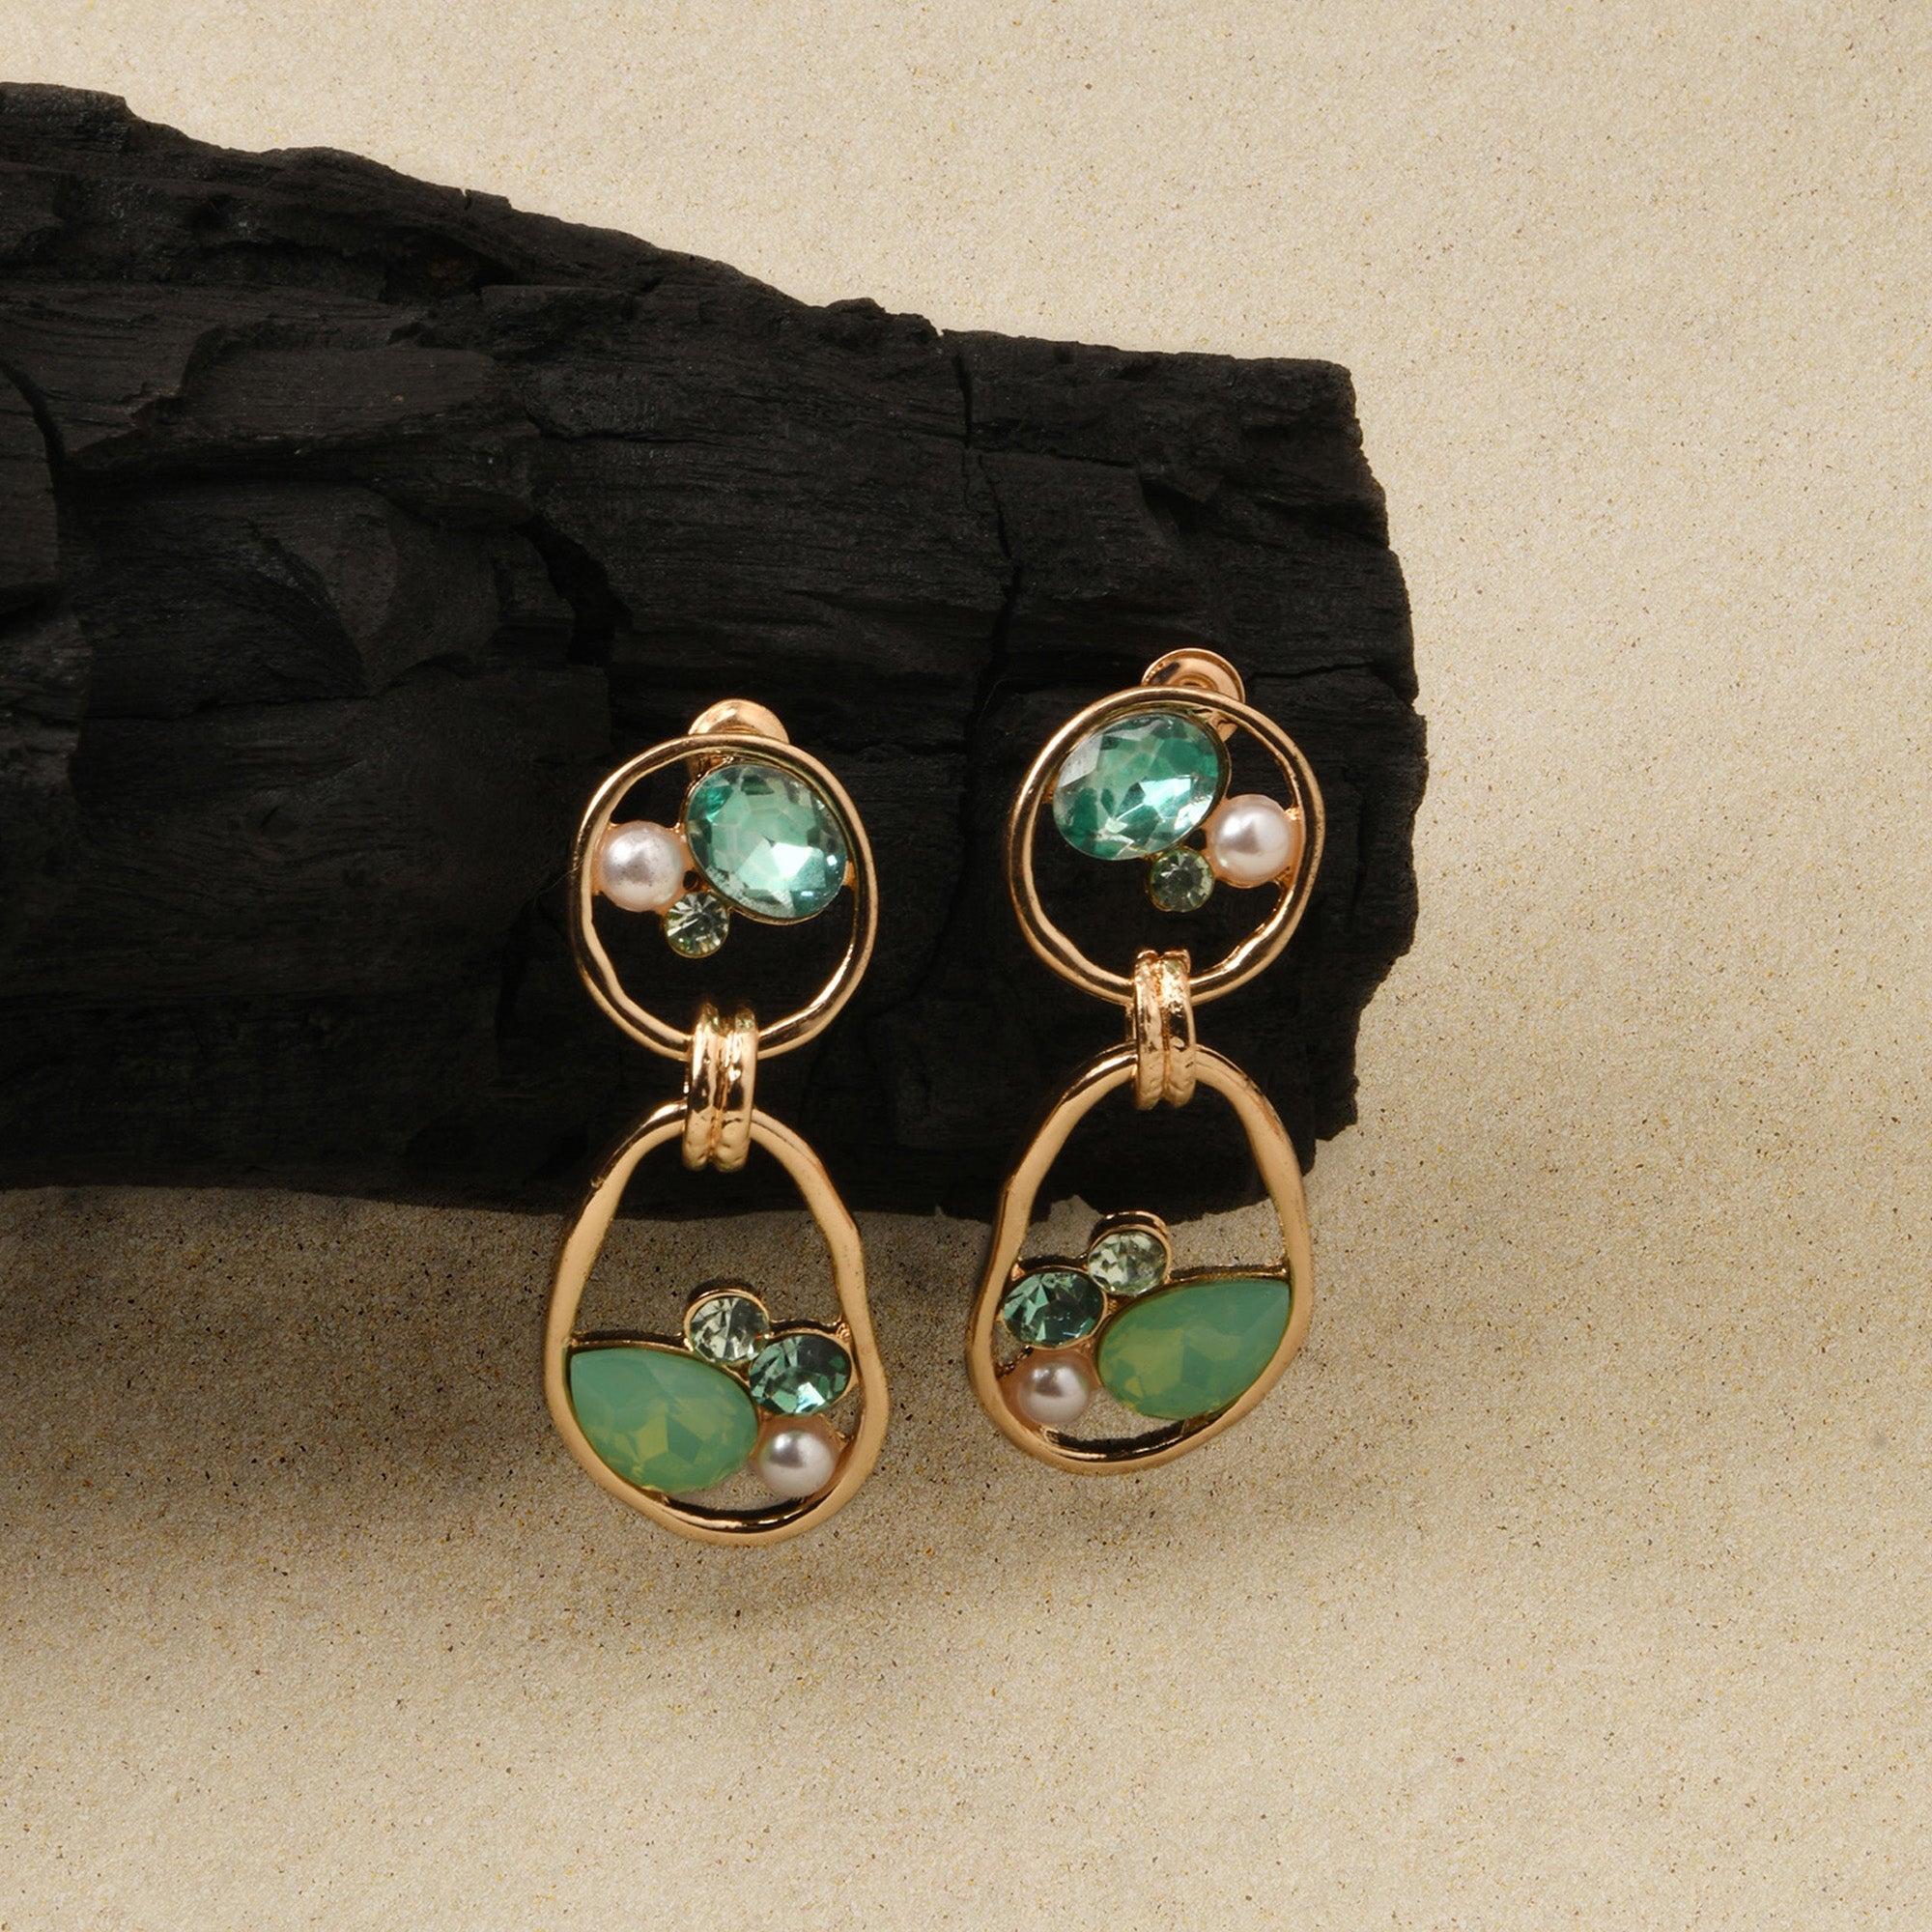 Buy Jade Earrings-light Color Jade Studs Earring-jade Jewelry-small Round Jade  Earrings-light Green Stone Earrings Online in India - Etsy